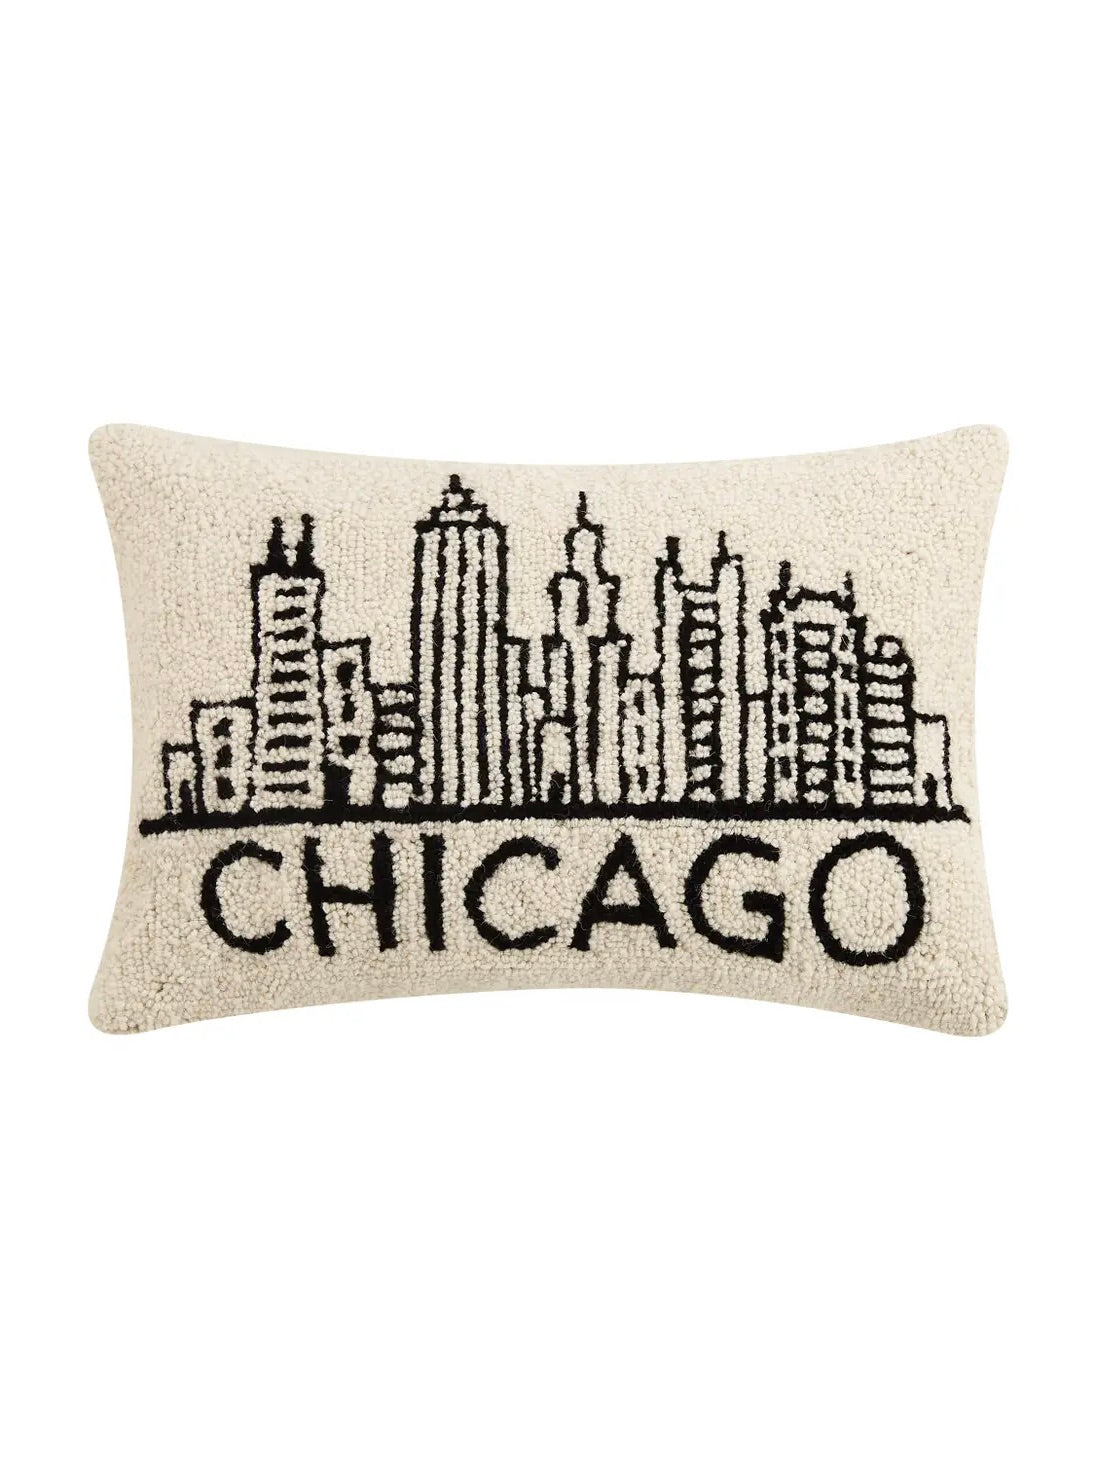 Hook Pillow - Chicago